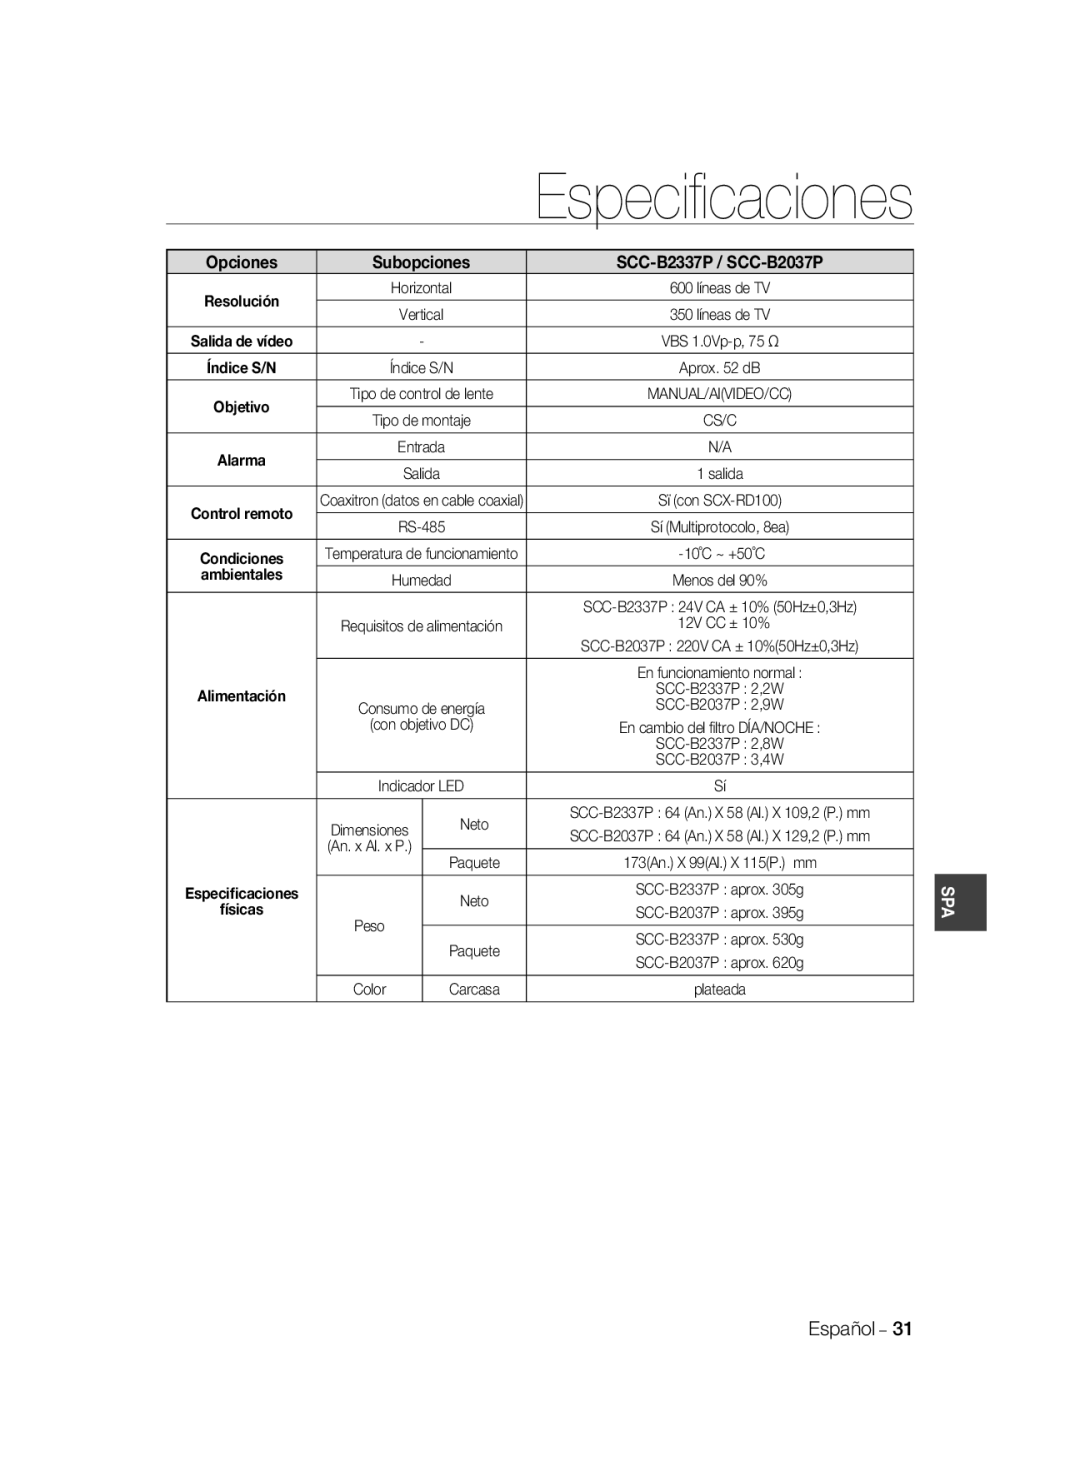 Samsung manual Especiﬁcaciones, Subopciones, Opciones, SCC-B2337P / SCC-B2037P, ambientales 